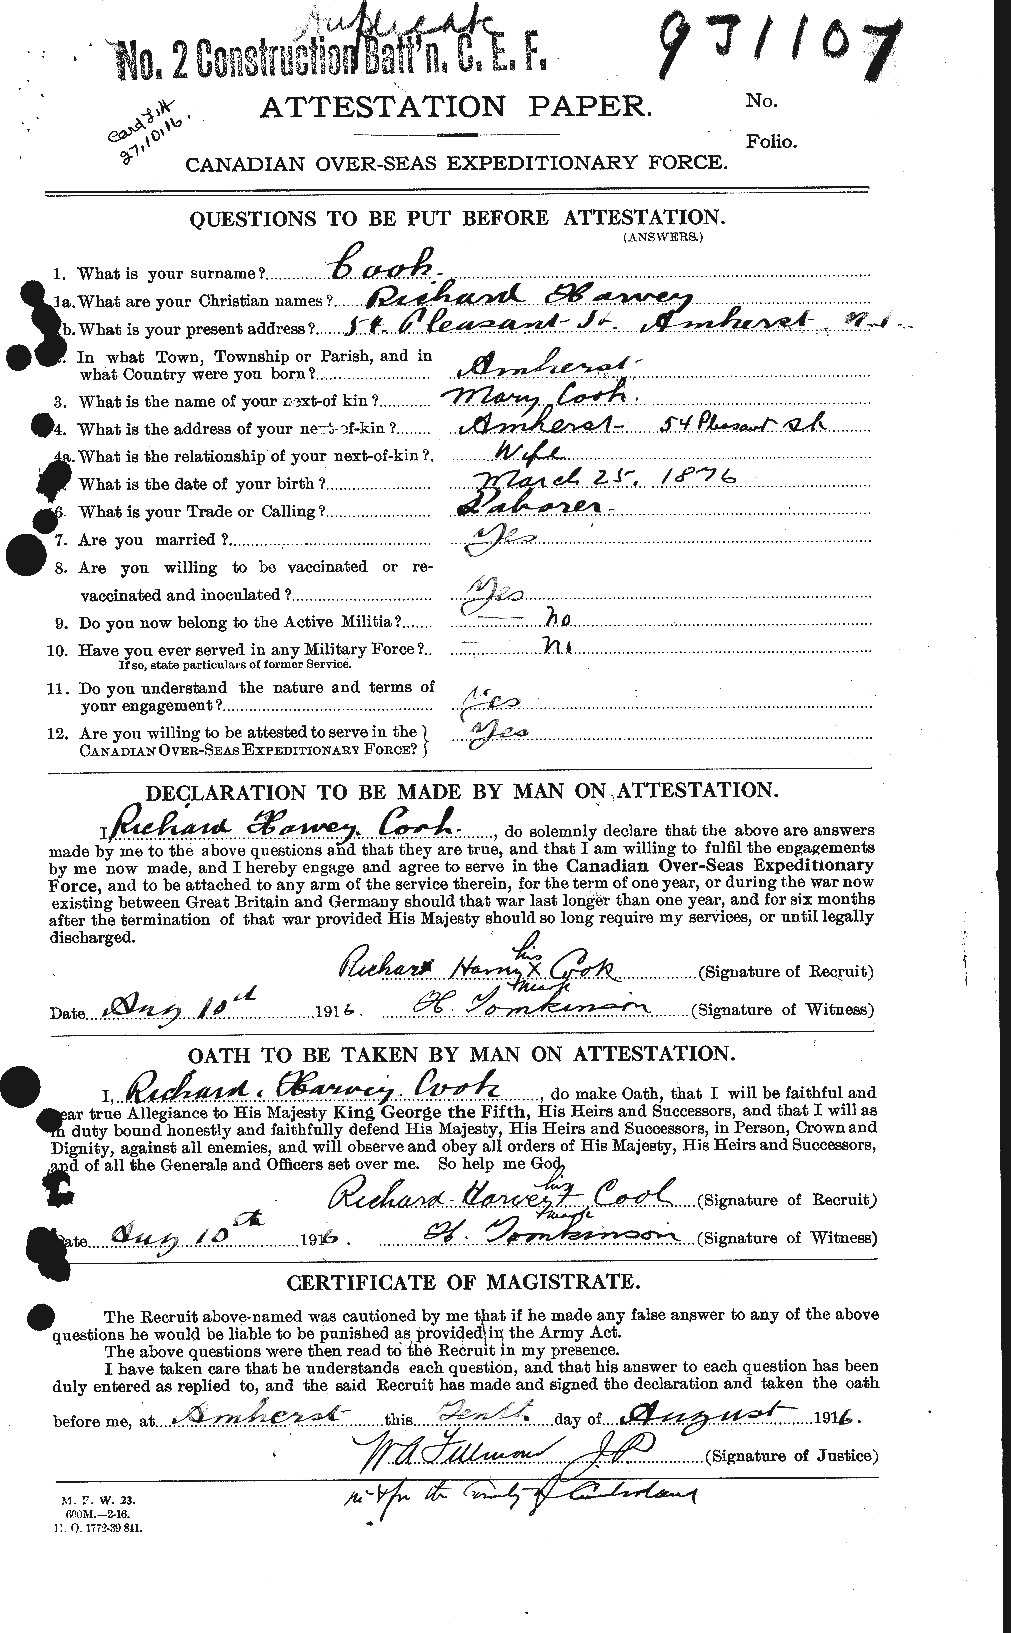 Dossiers du Personnel de la Première Guerre mondiale - CEC 075180a